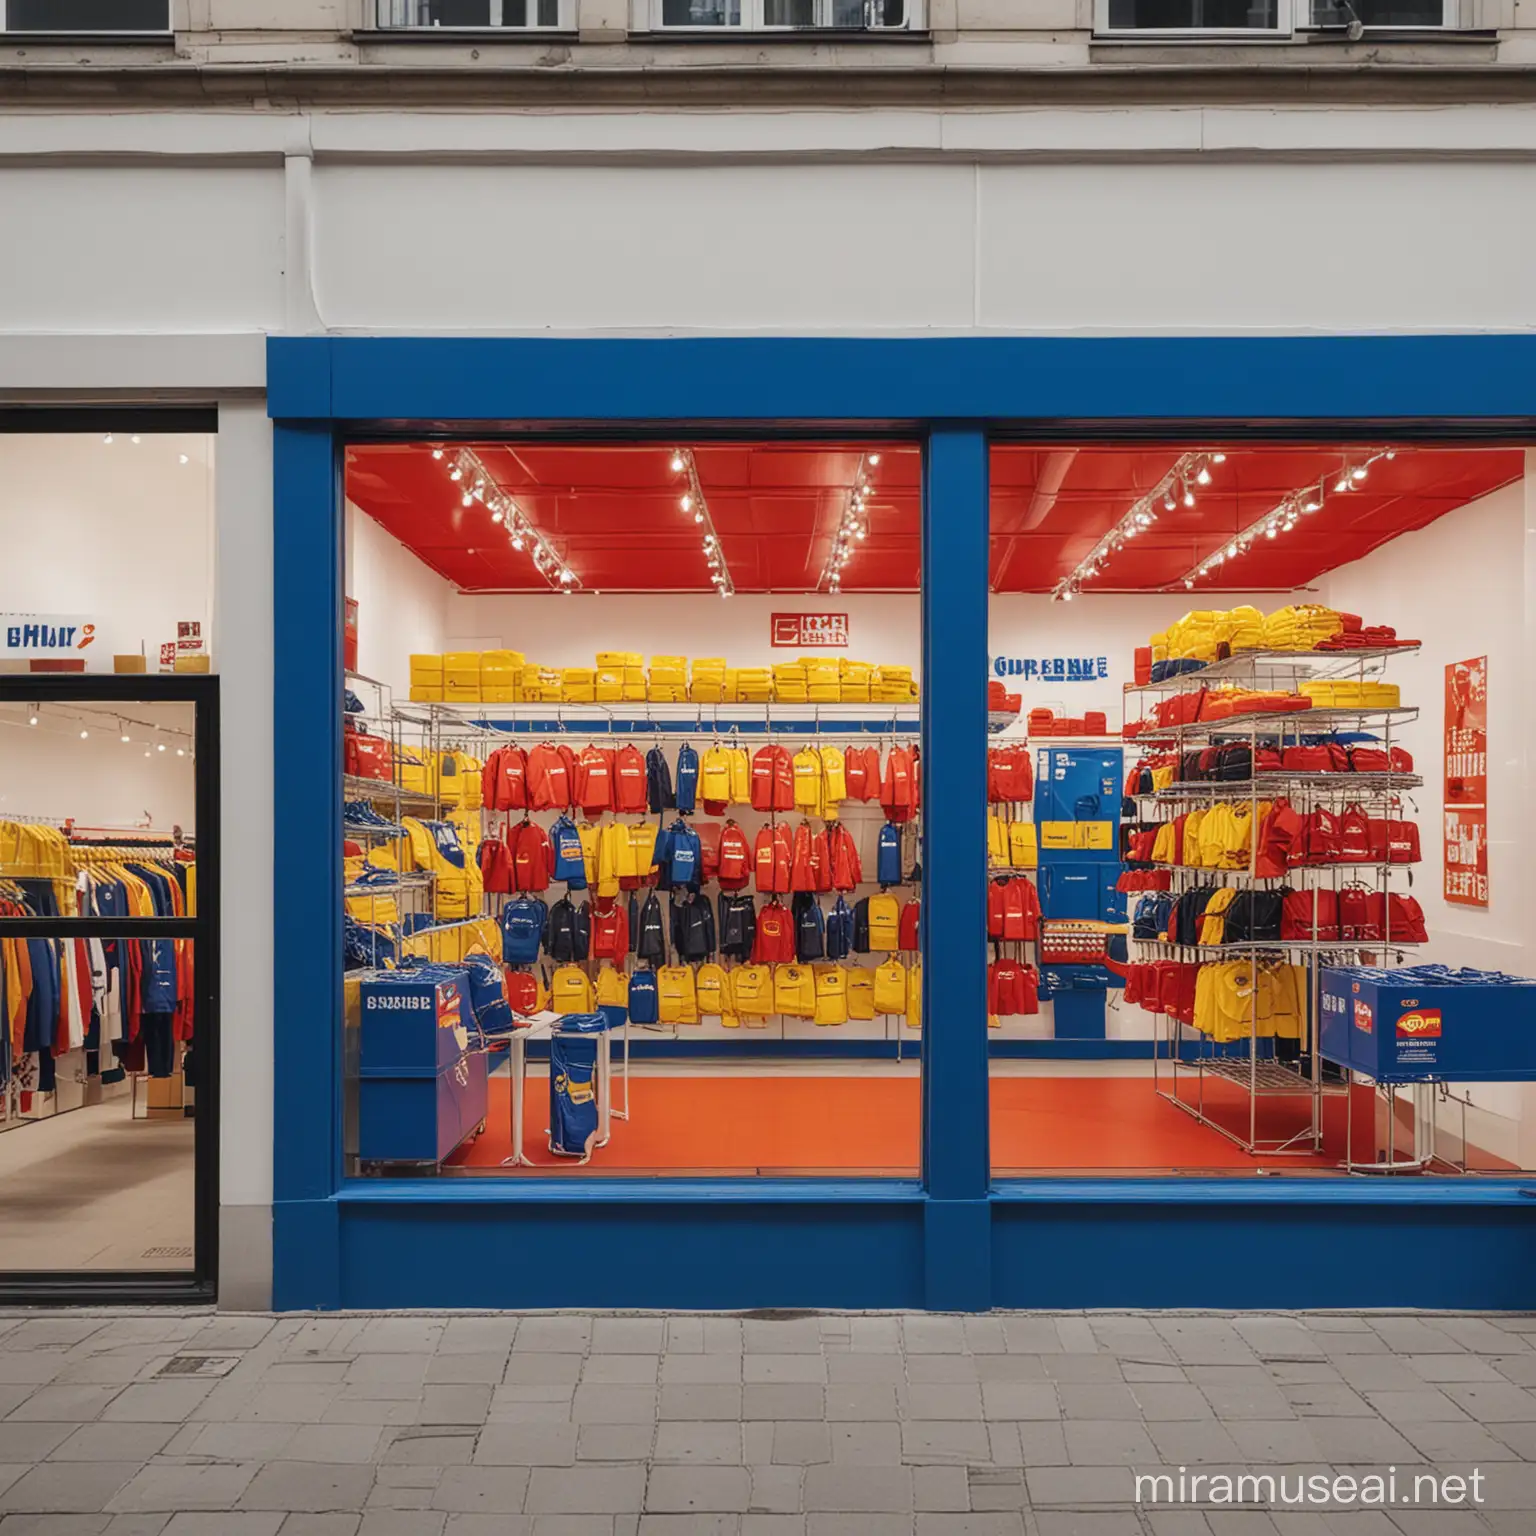 Créer un showroom de luxe.
Ce pop up store représente une collaboration entre le supermarché allemand Lidl et la marque de luxe Supreme. 
C'est une collaboration street-wear et luxe.
Le rouge, le jaune le bleu sont à l'honneur. 